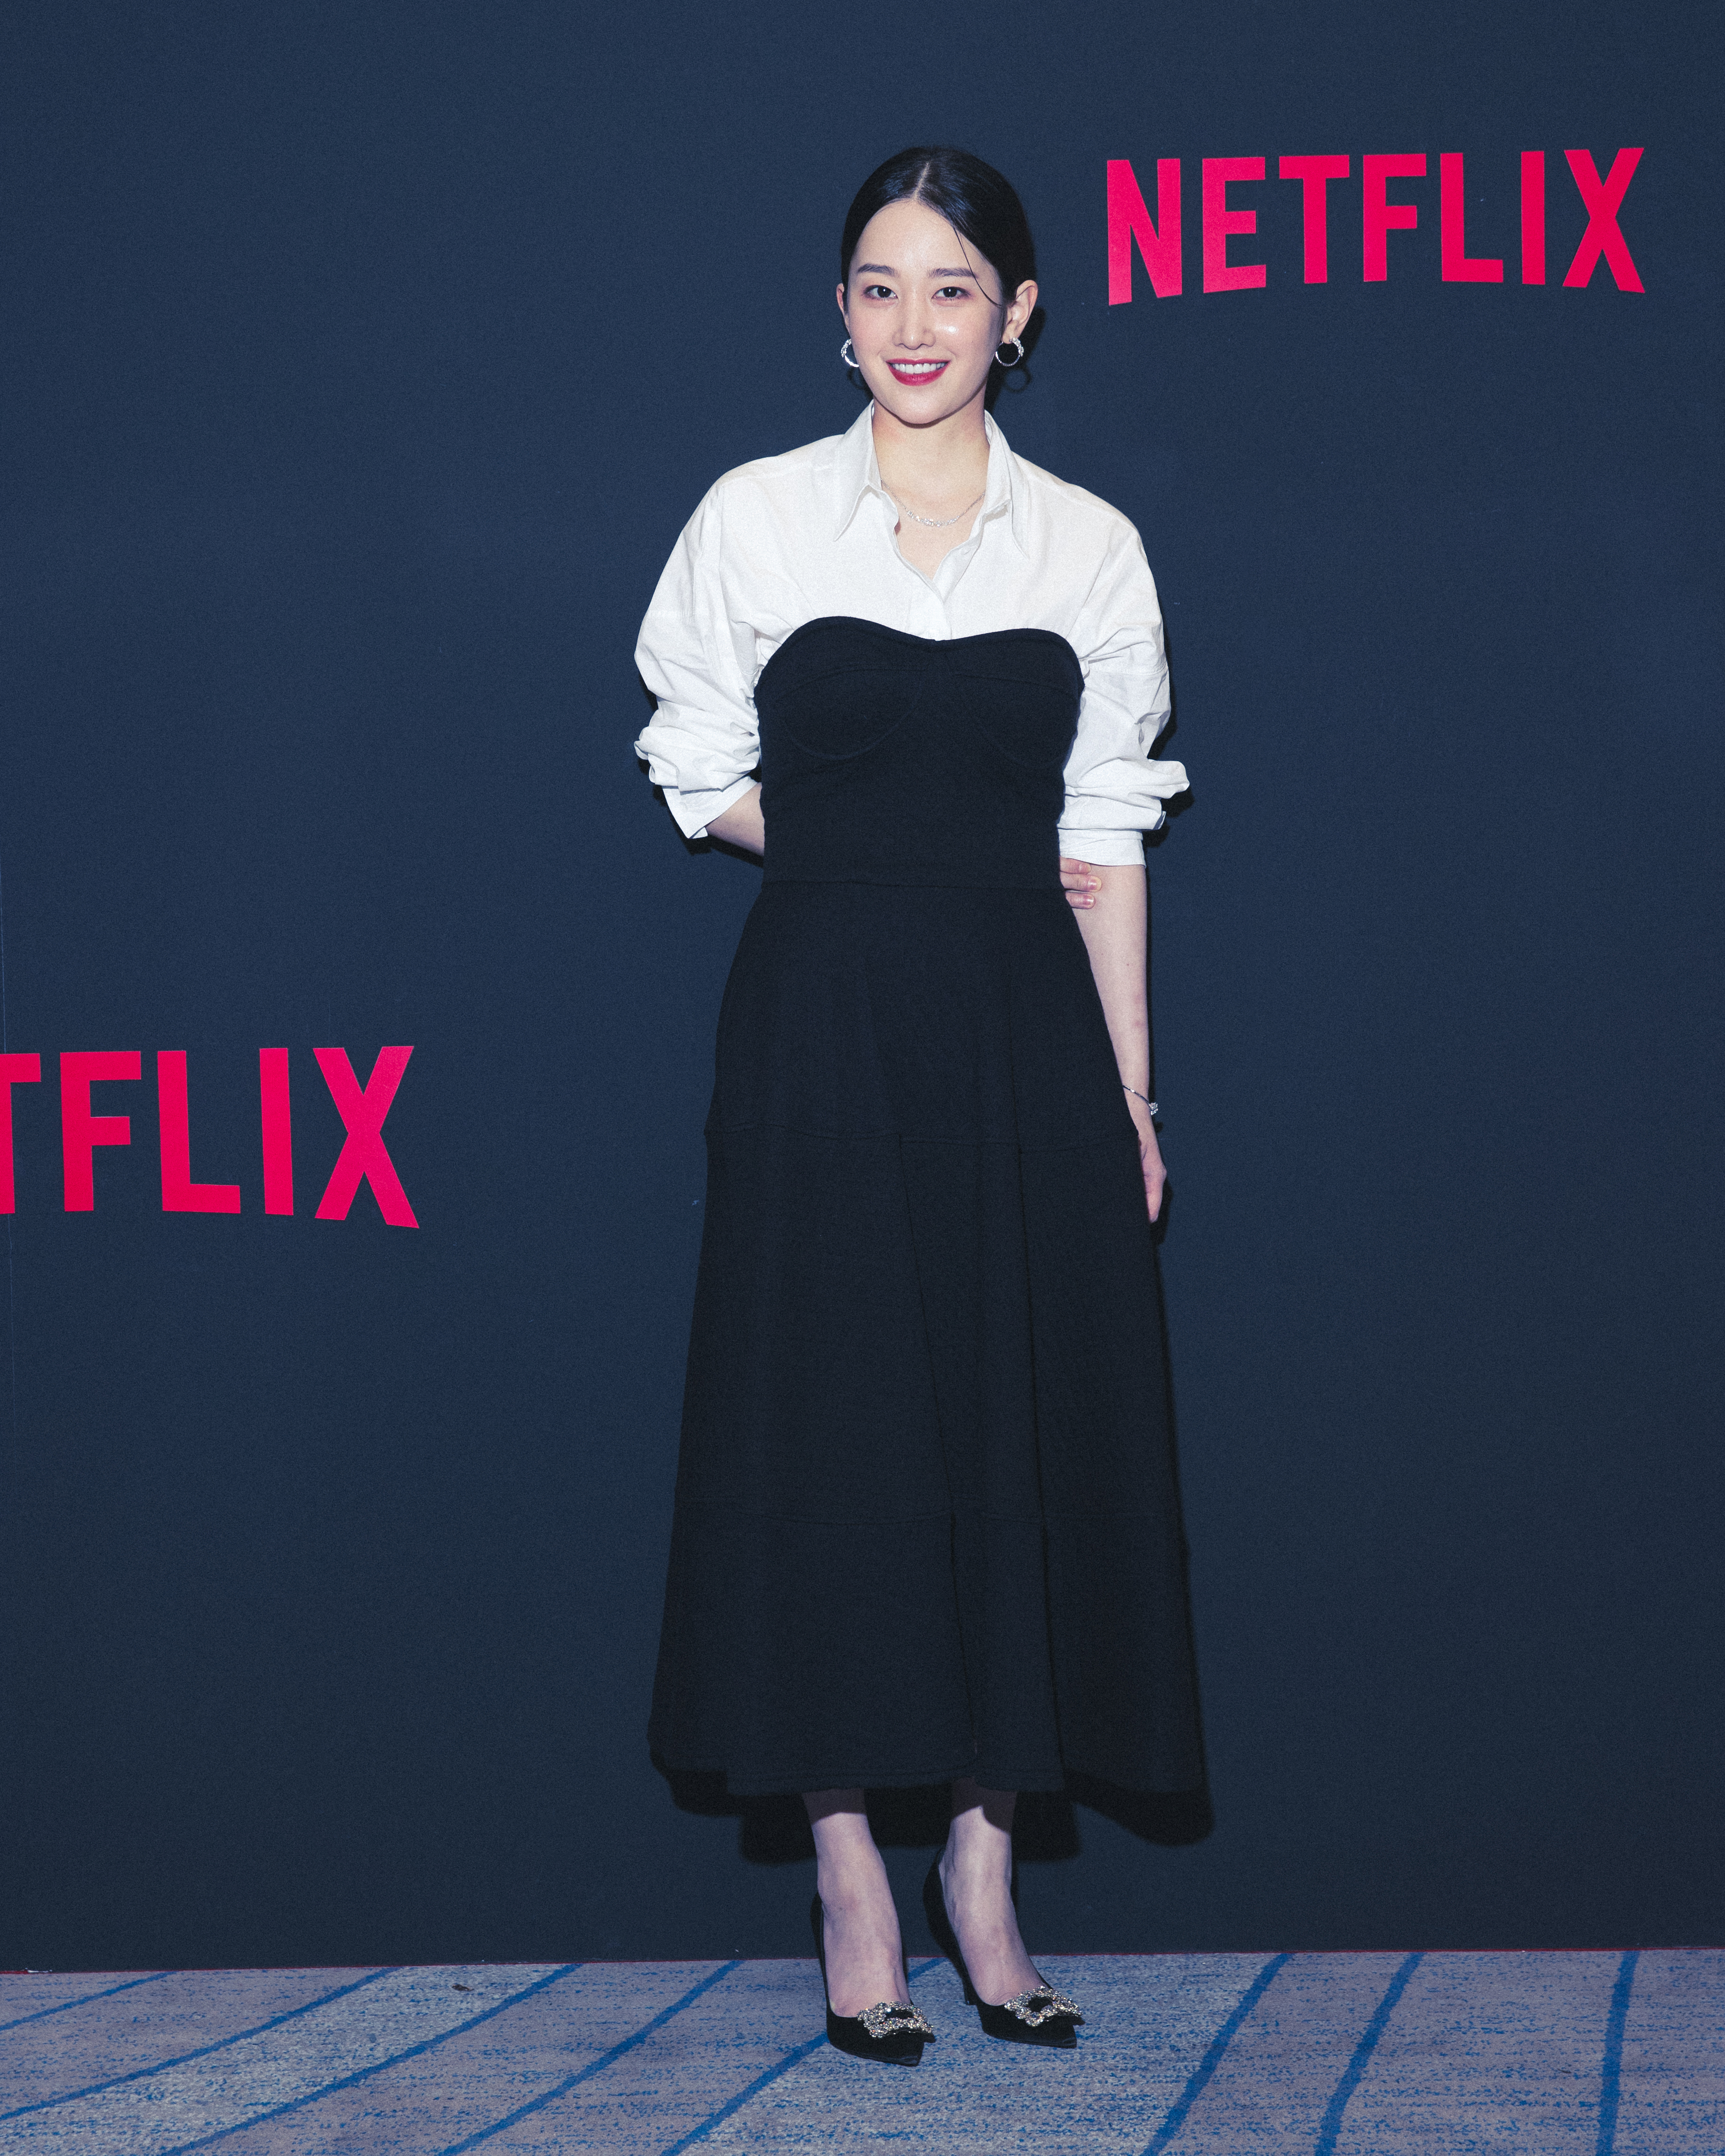 Títulos Netflix coreanos conquistam grandes vitórias e indicações